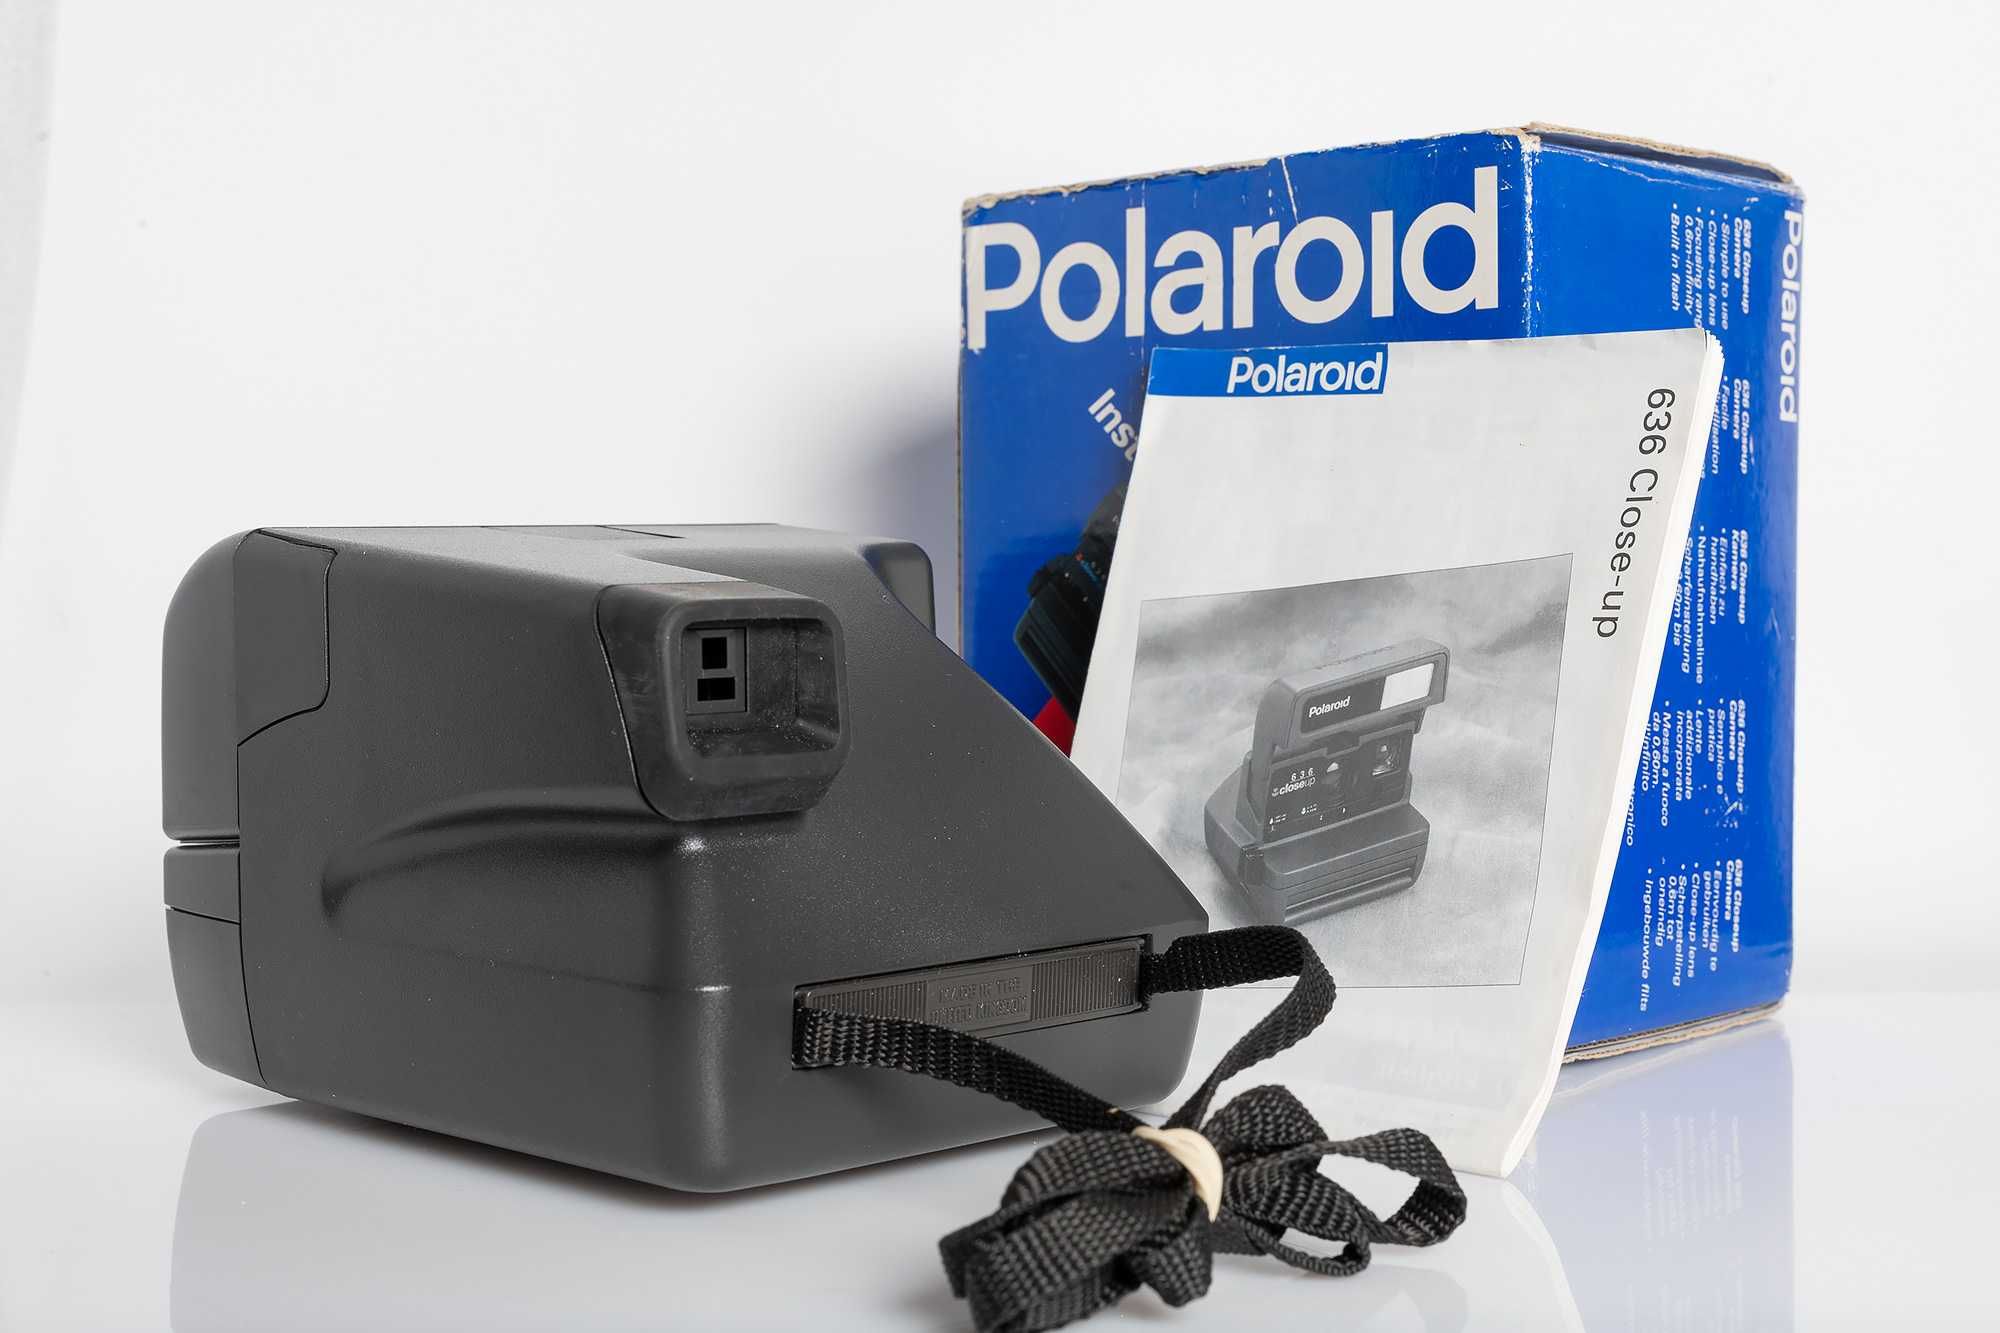 Polaroid 636 CloseUp, czysty, sprawny, instrukcja, pudełko.